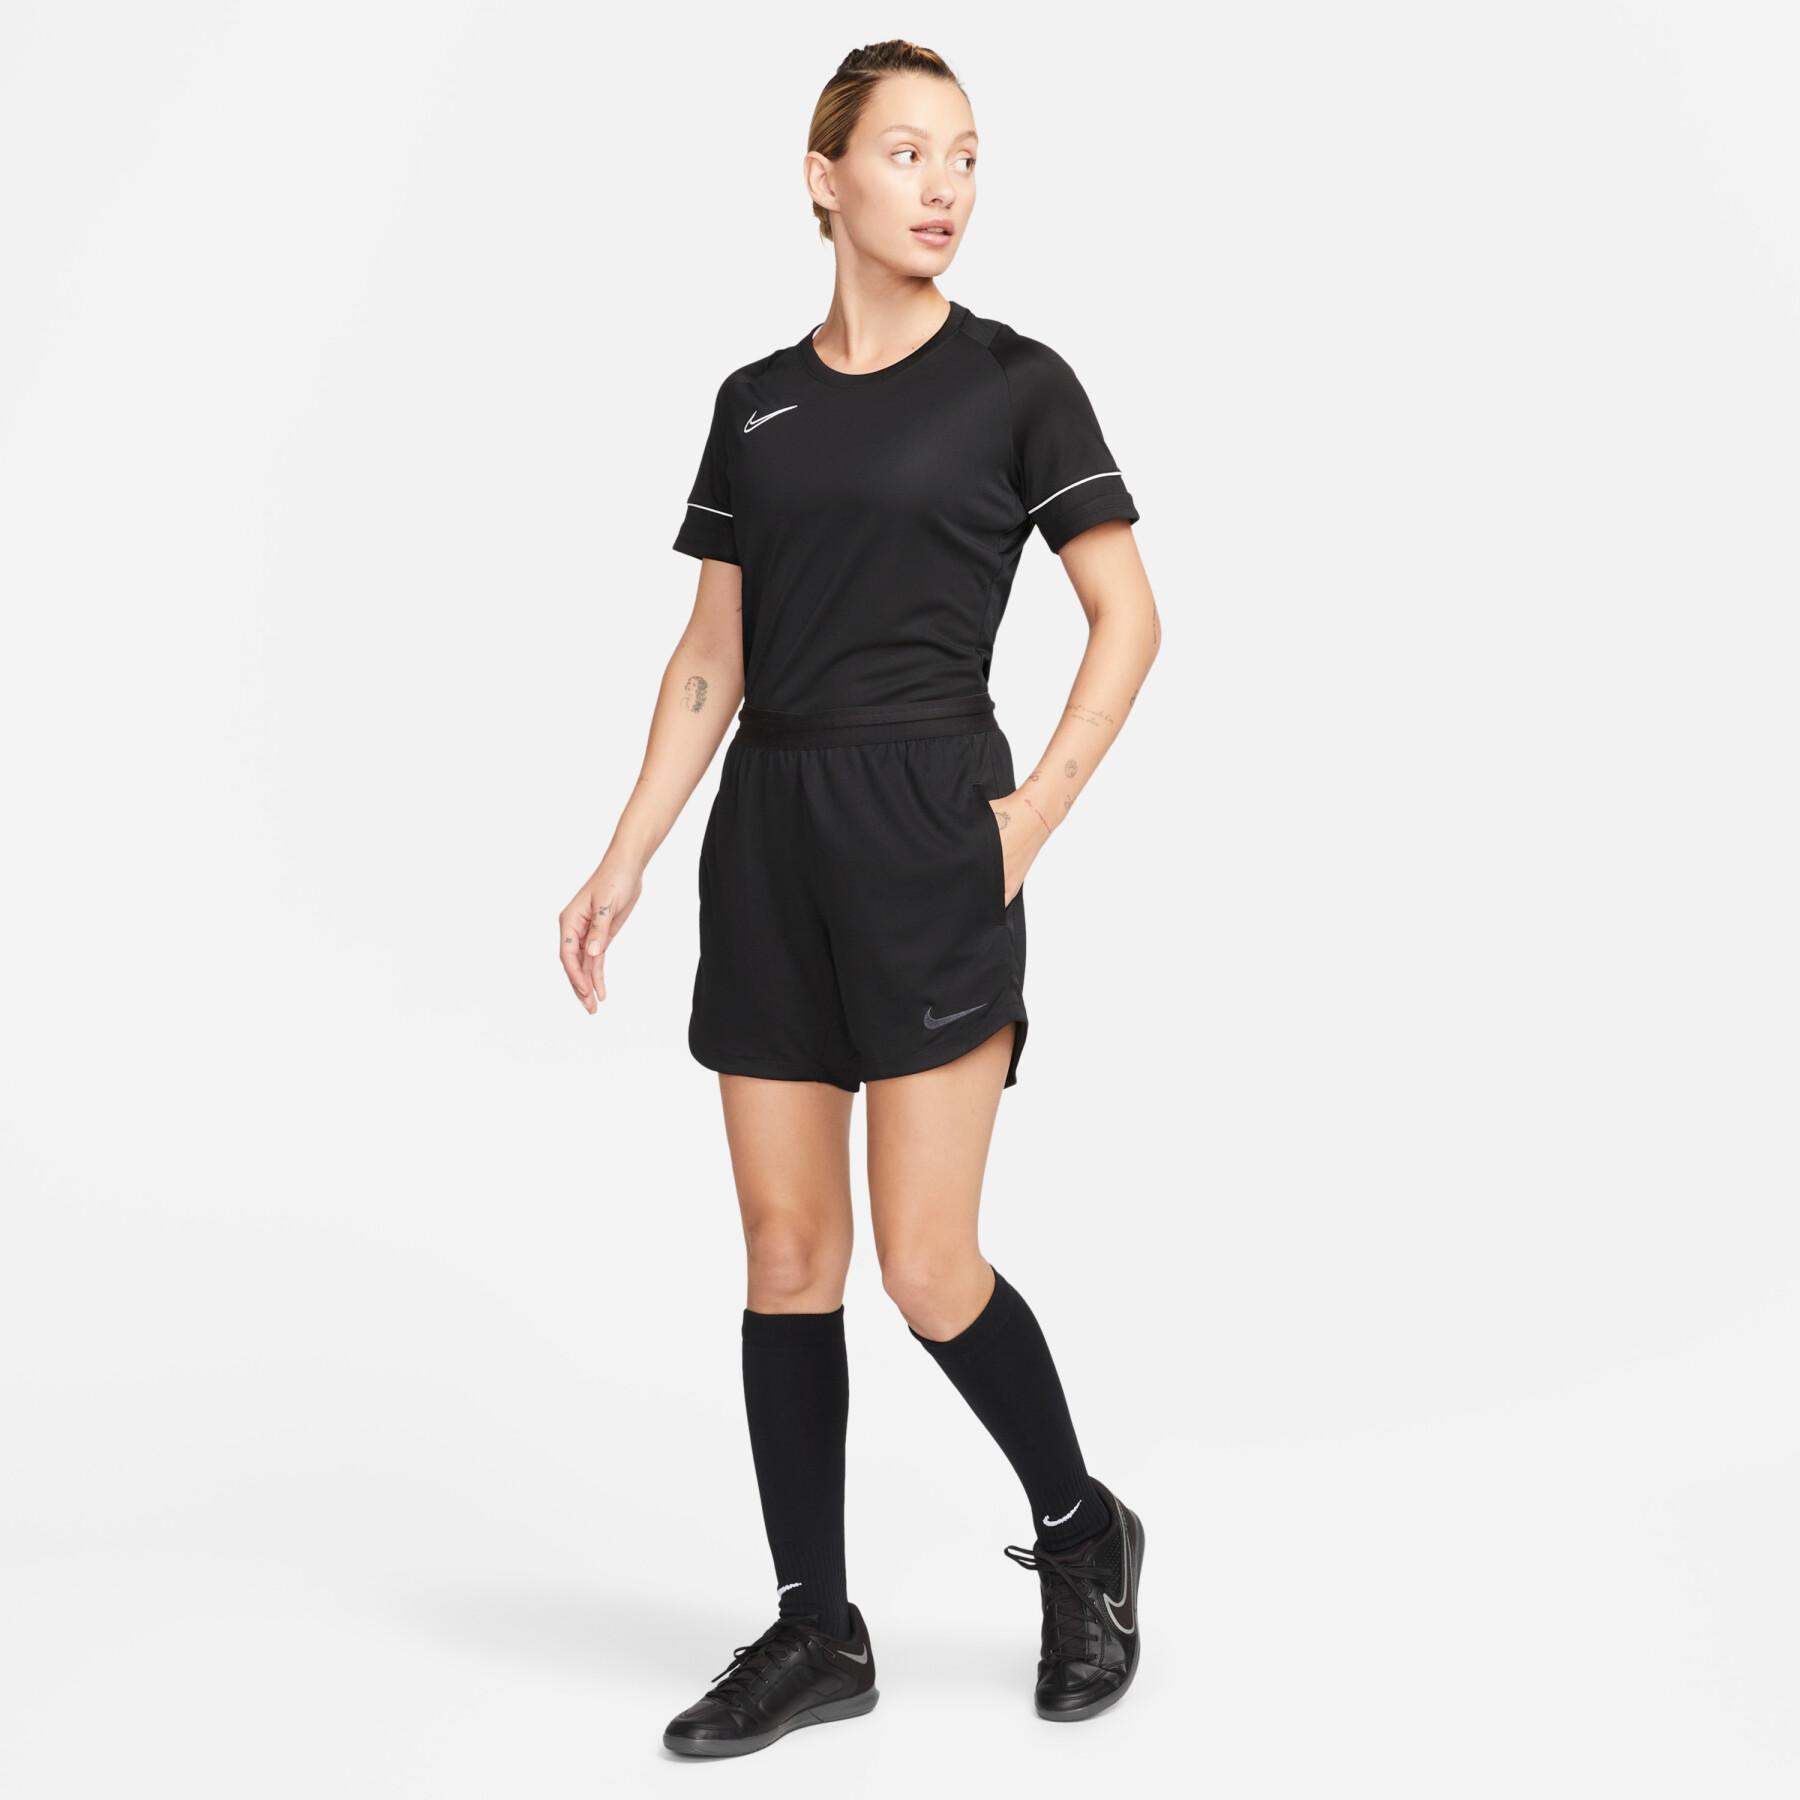 Shorts för kvinnor Nike Dri-FIT REF 2